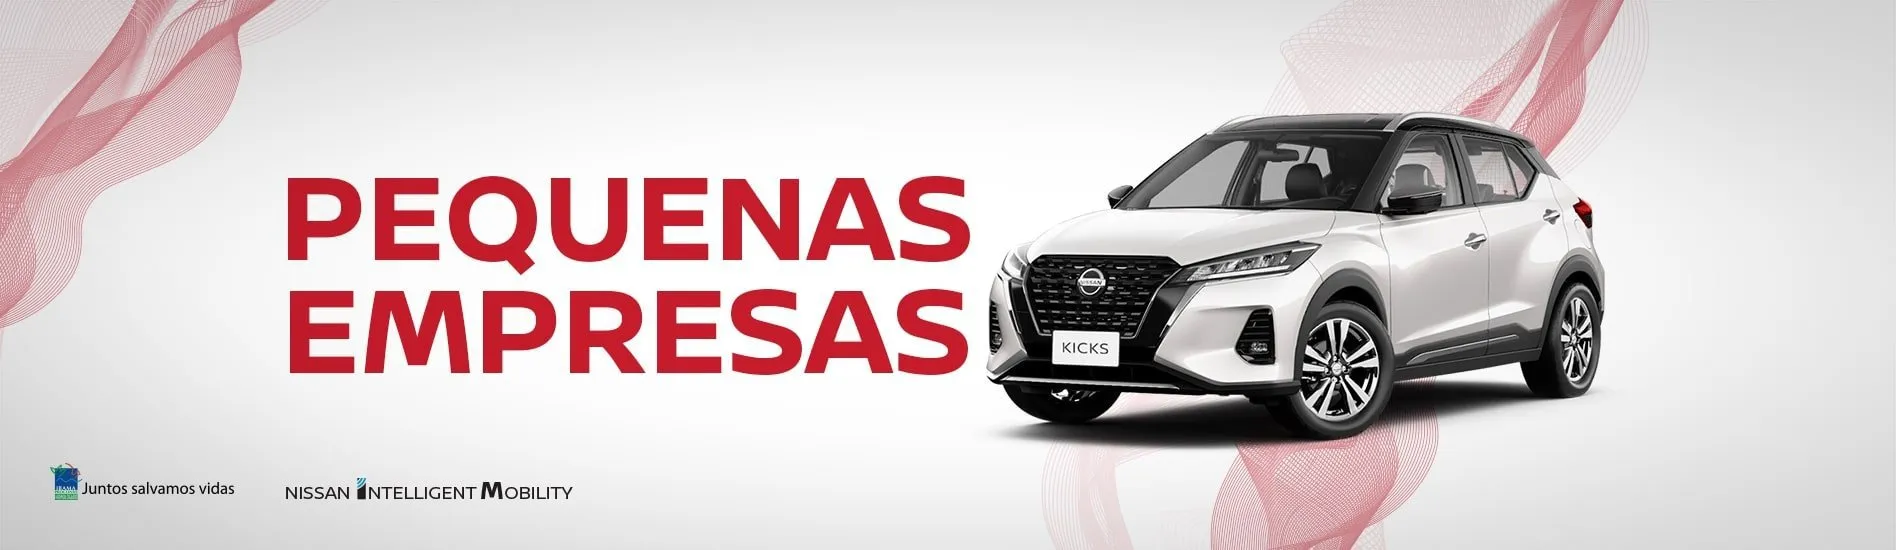 Novo Nissan Kicks - Empresas